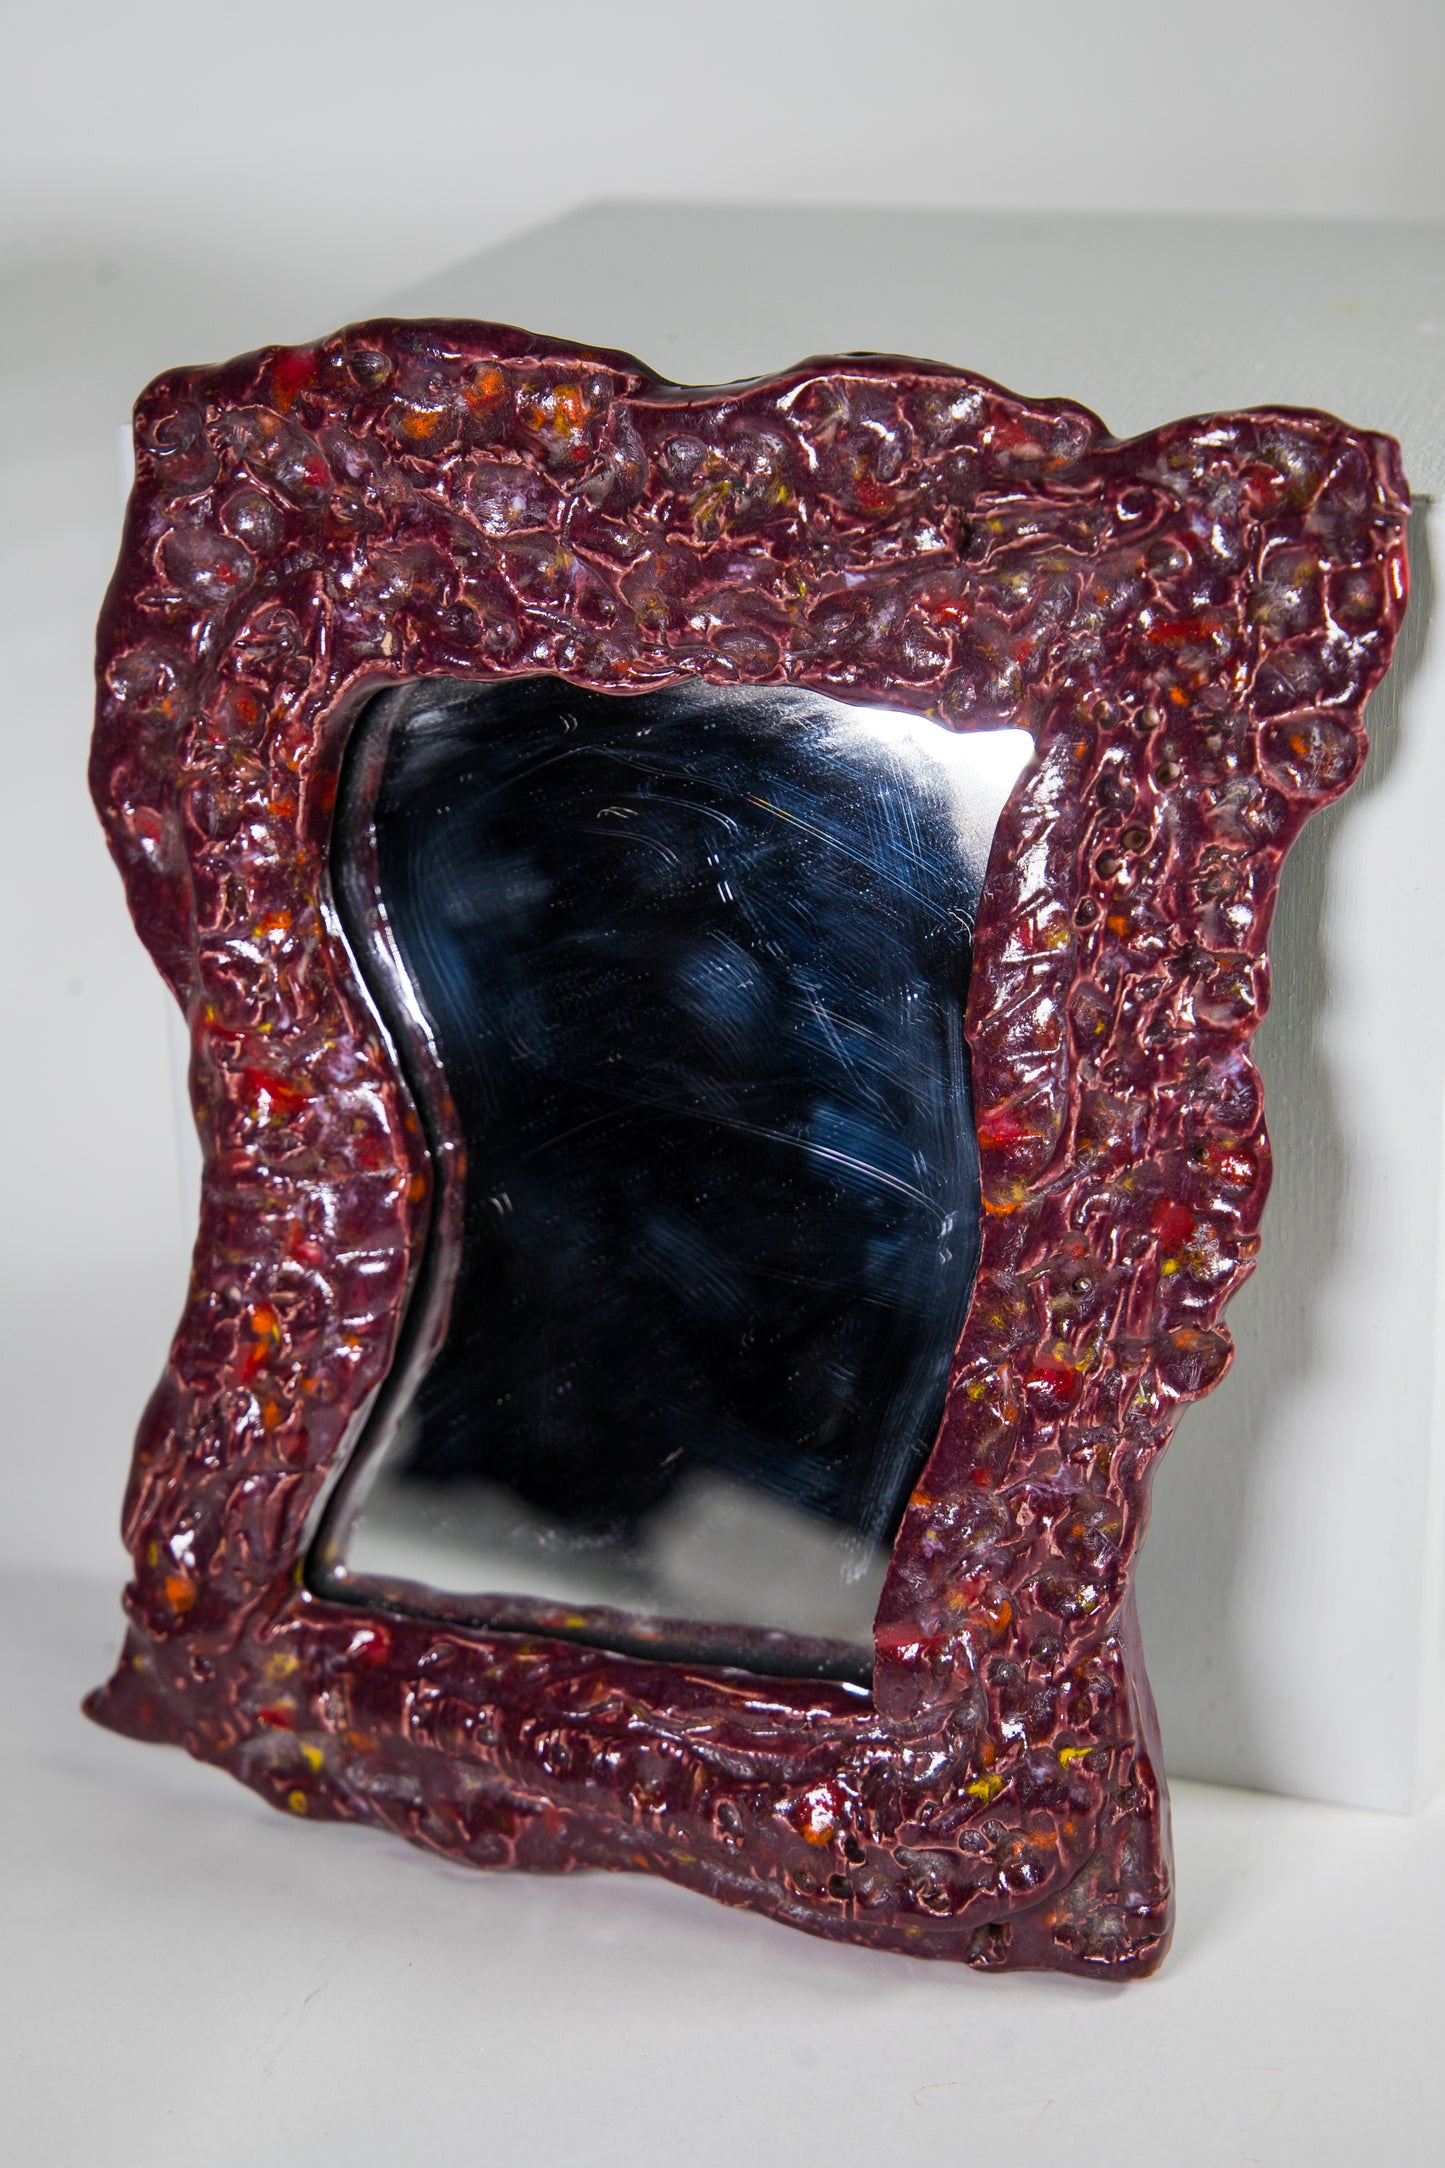 Ceramic Mirror